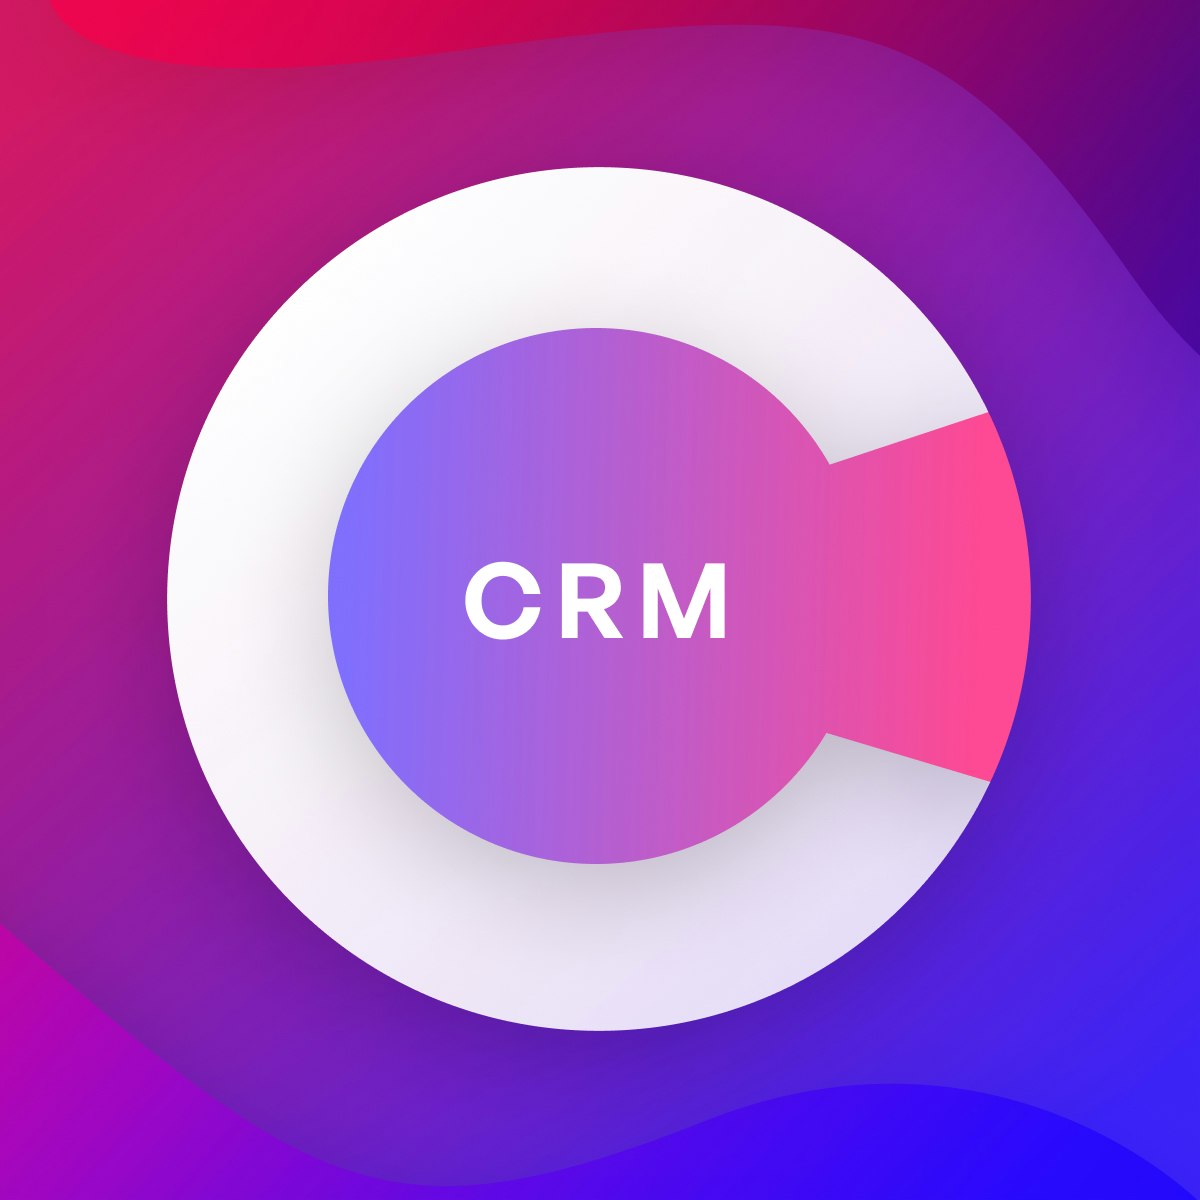 Company CRM logo